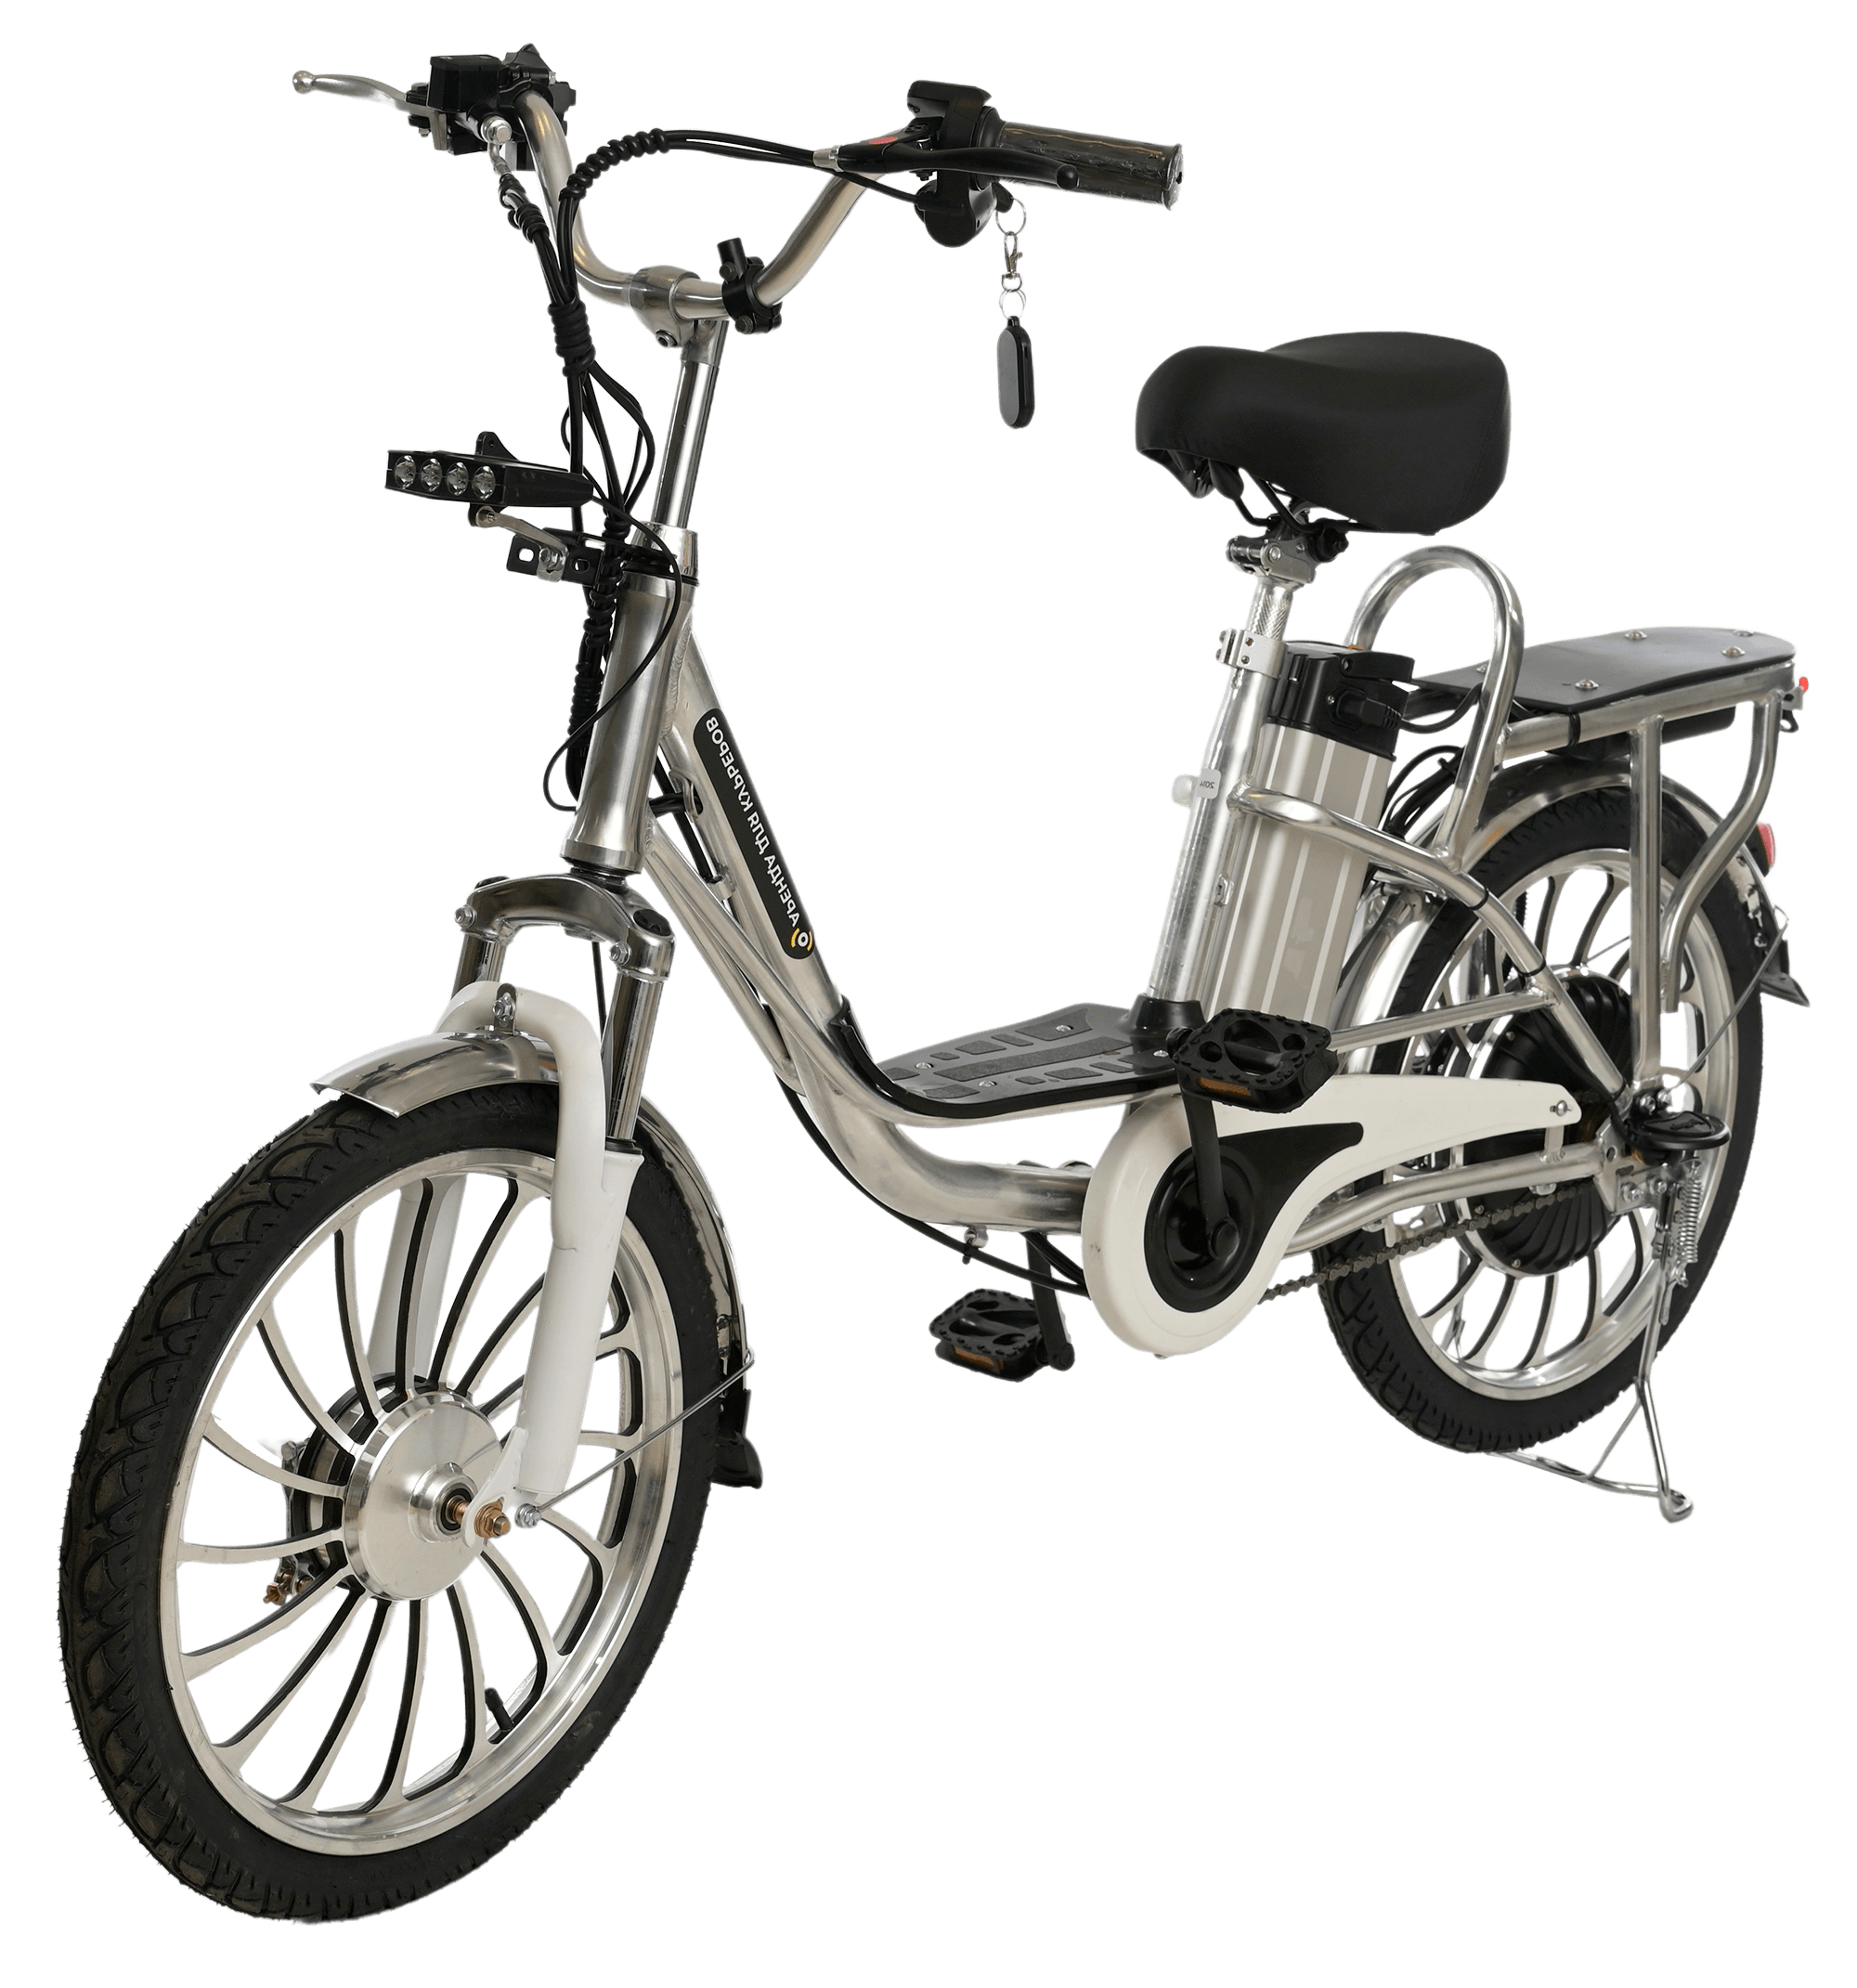 Электровелосипед Минако v2. Minako v15 электровелосипед. Электровелосипед Jio. Электровелосипед колхозник v2022 Pro-20.